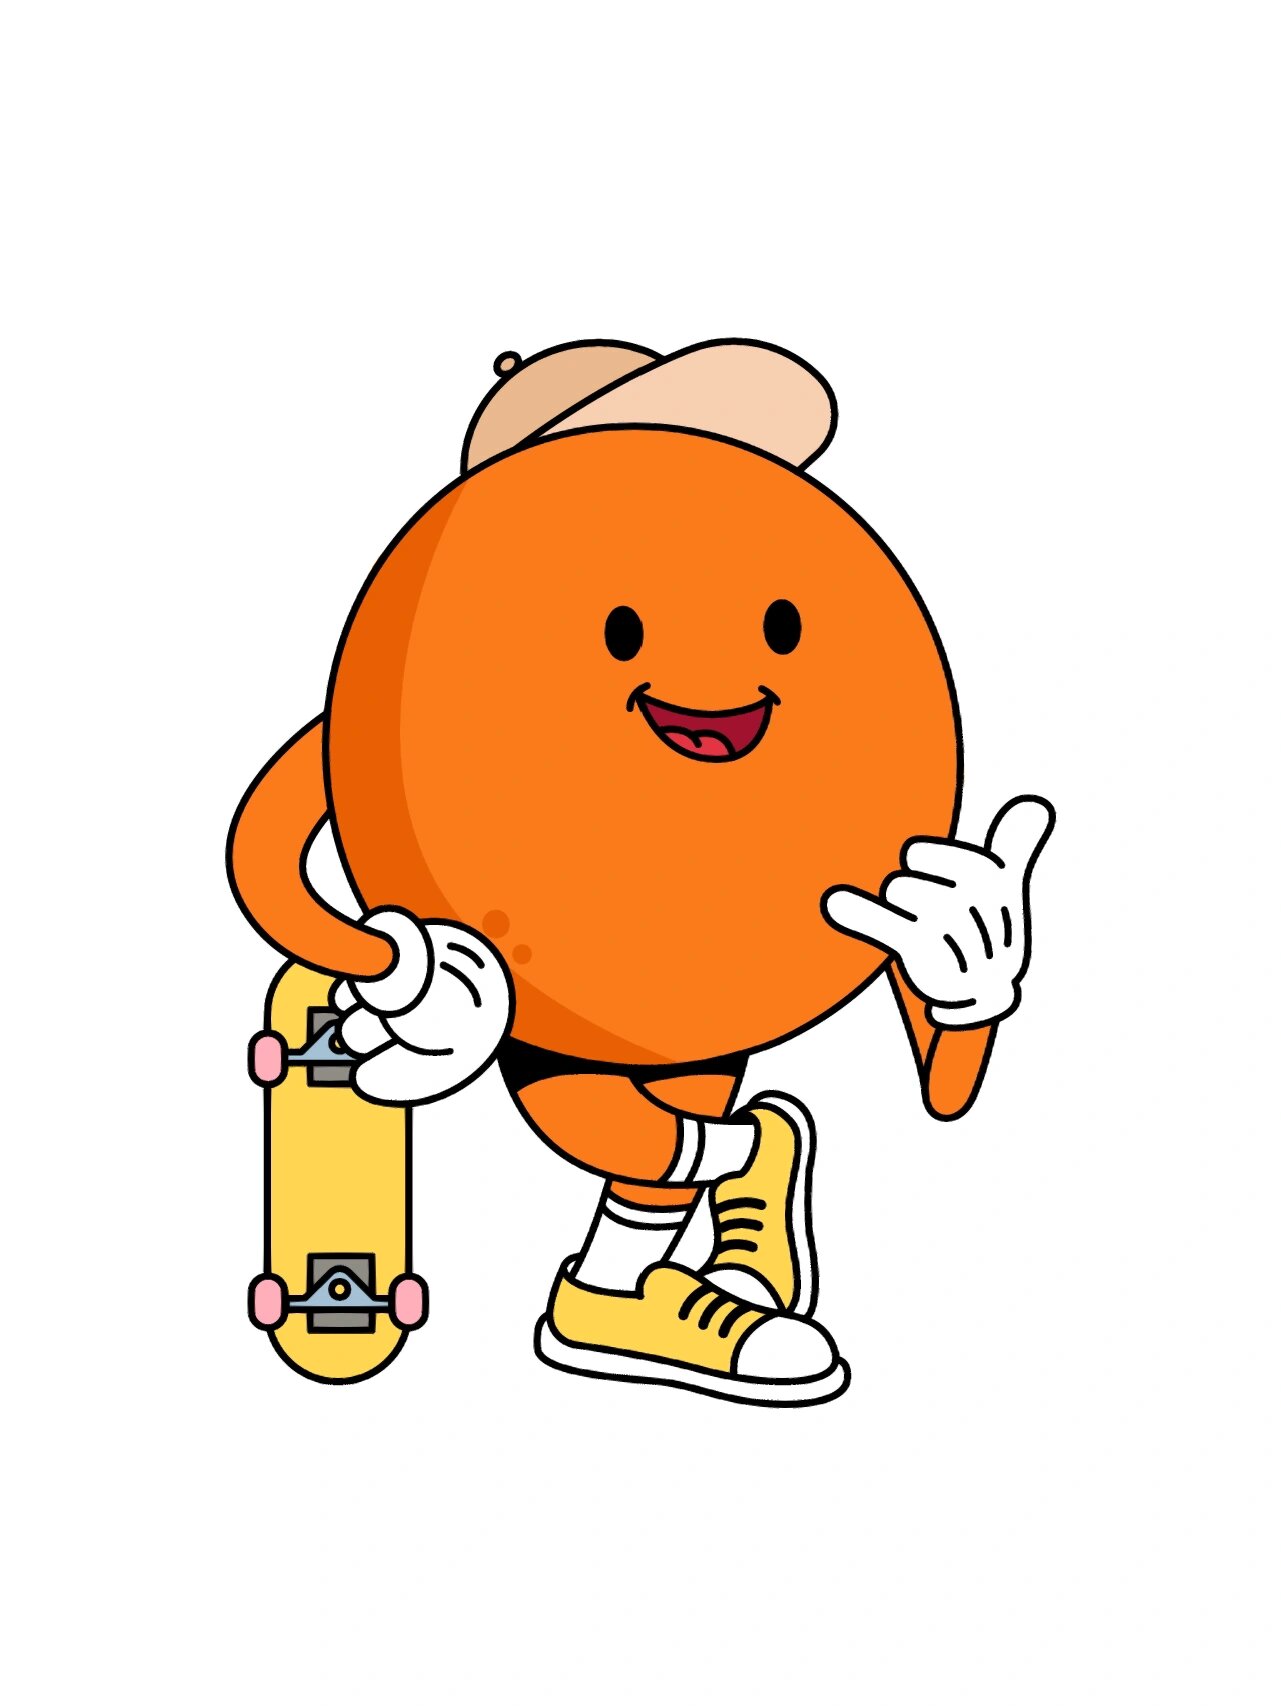 8715品牌ip设计以橙子为出发点,提取橙子图形,拟人化,生活动态